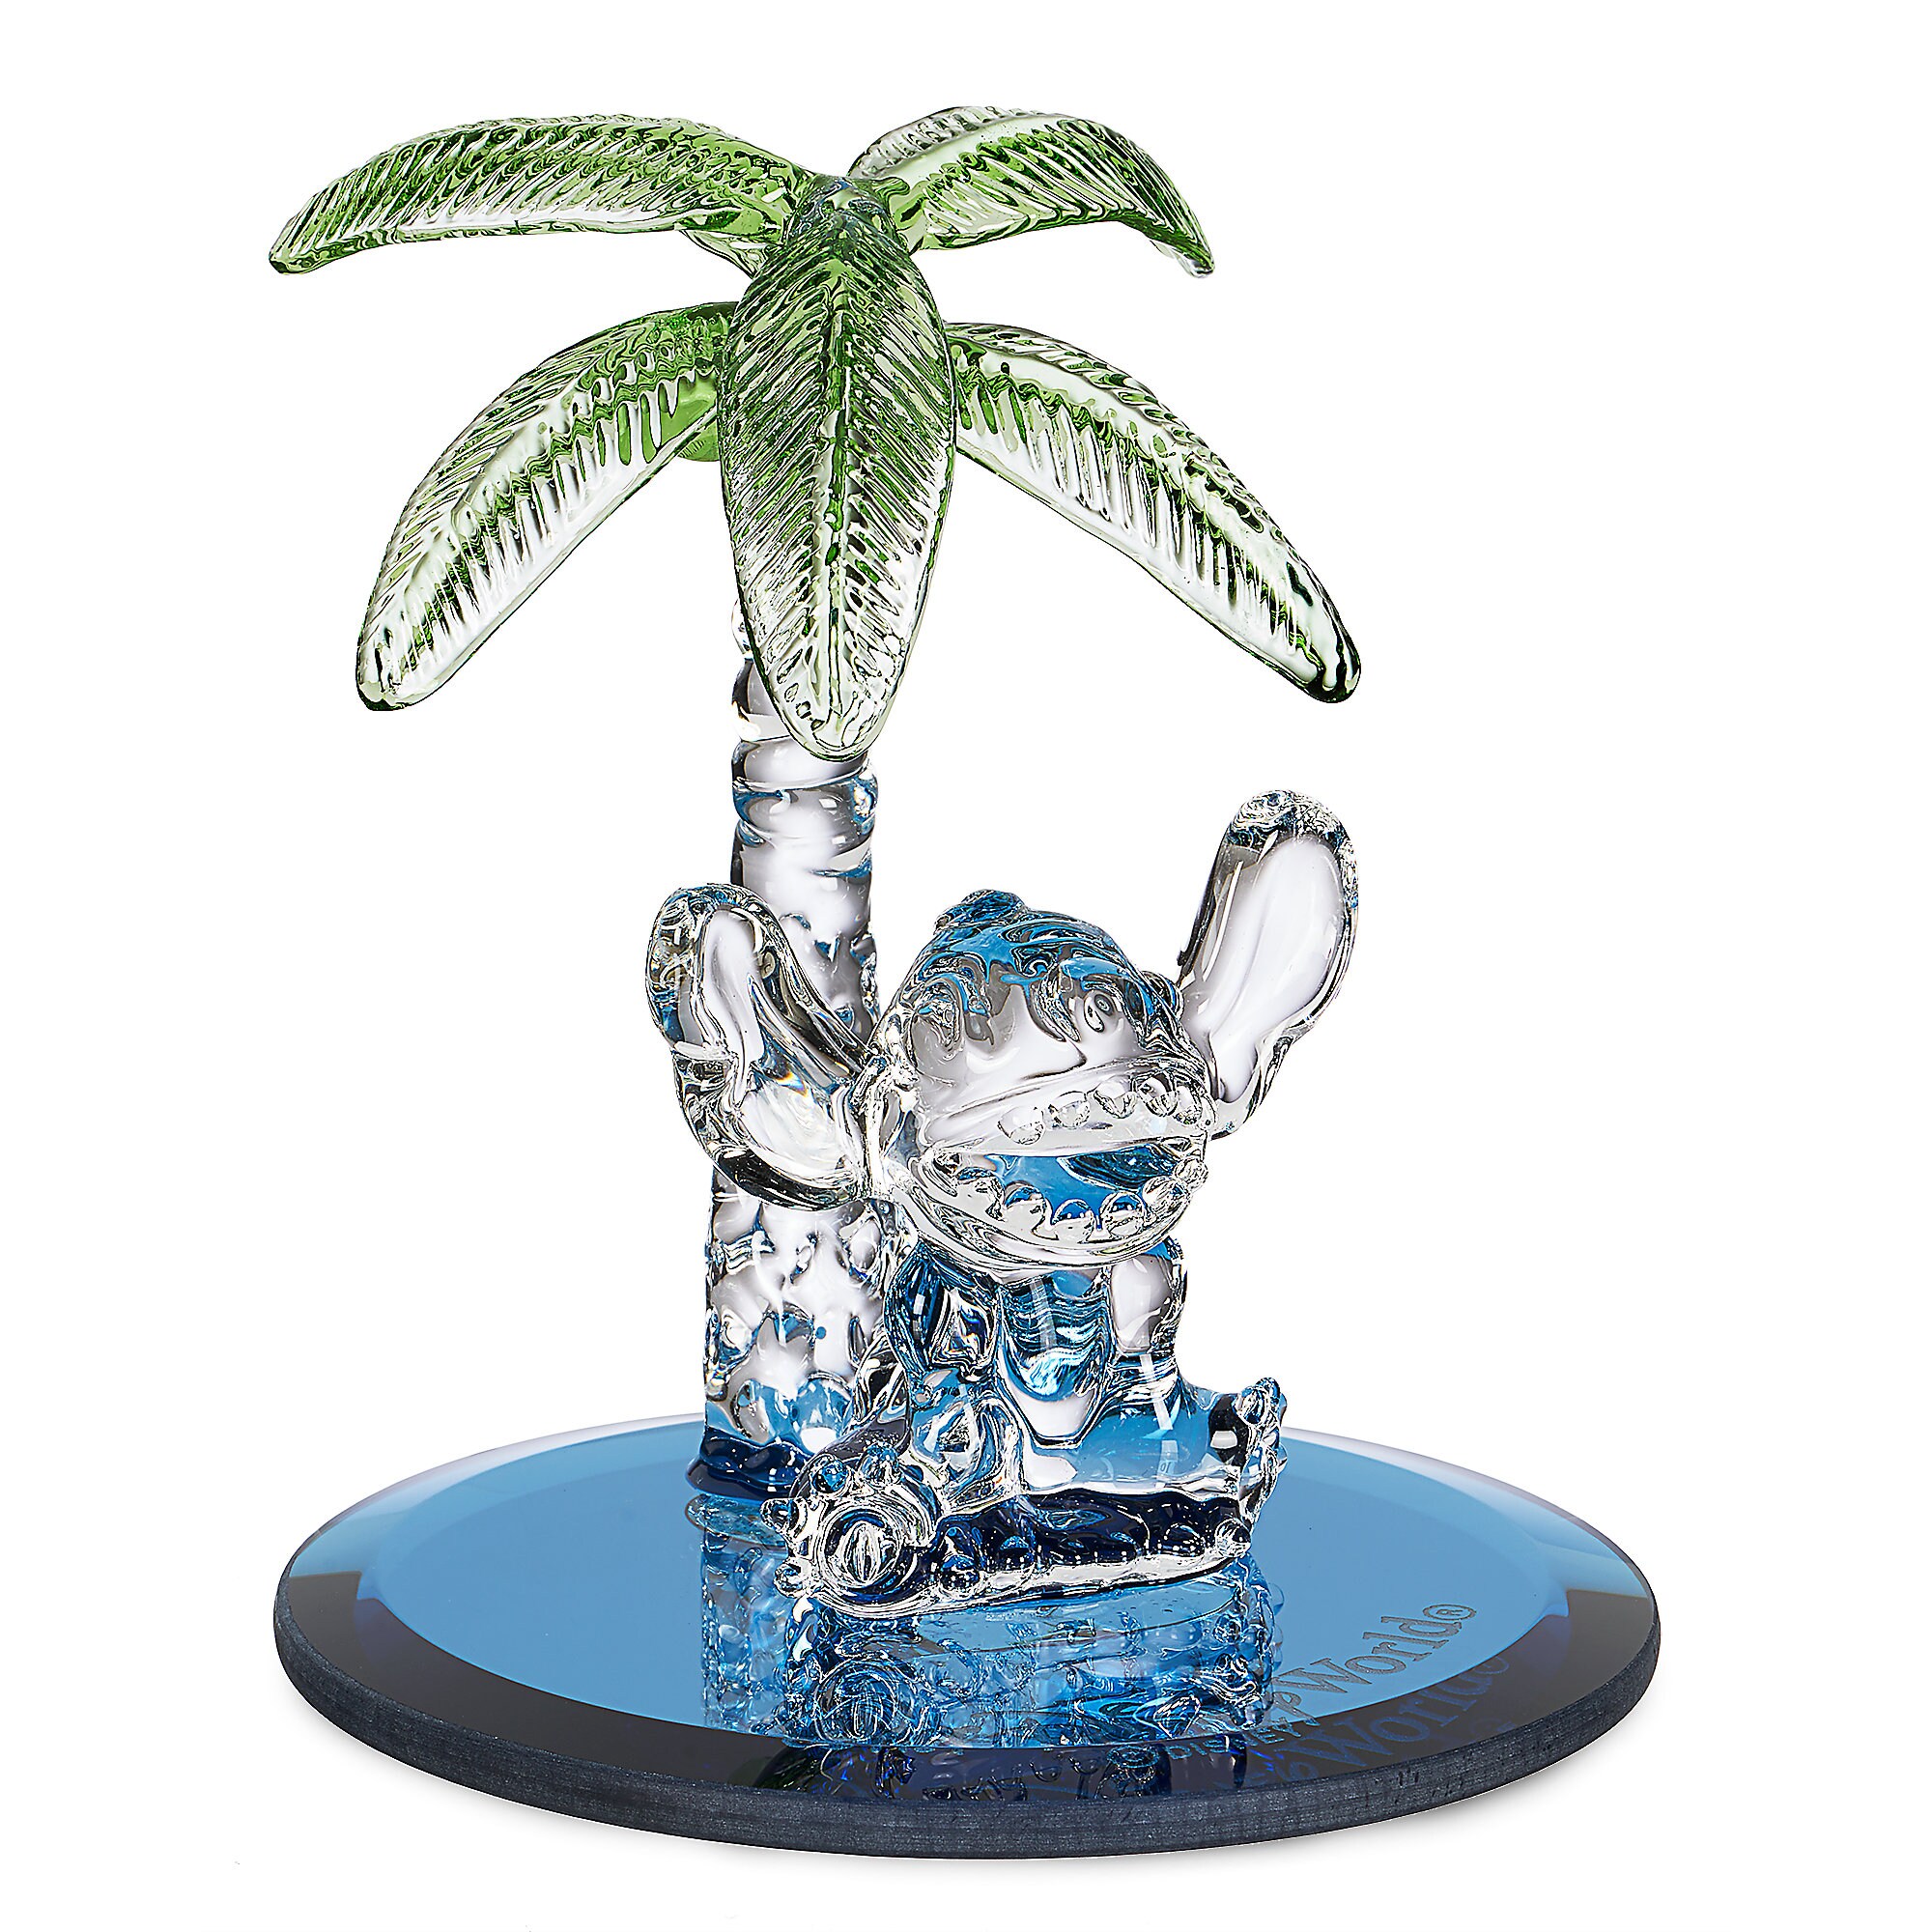 Stitch Palm Tree Figurine by Arribas - Walt Disney World